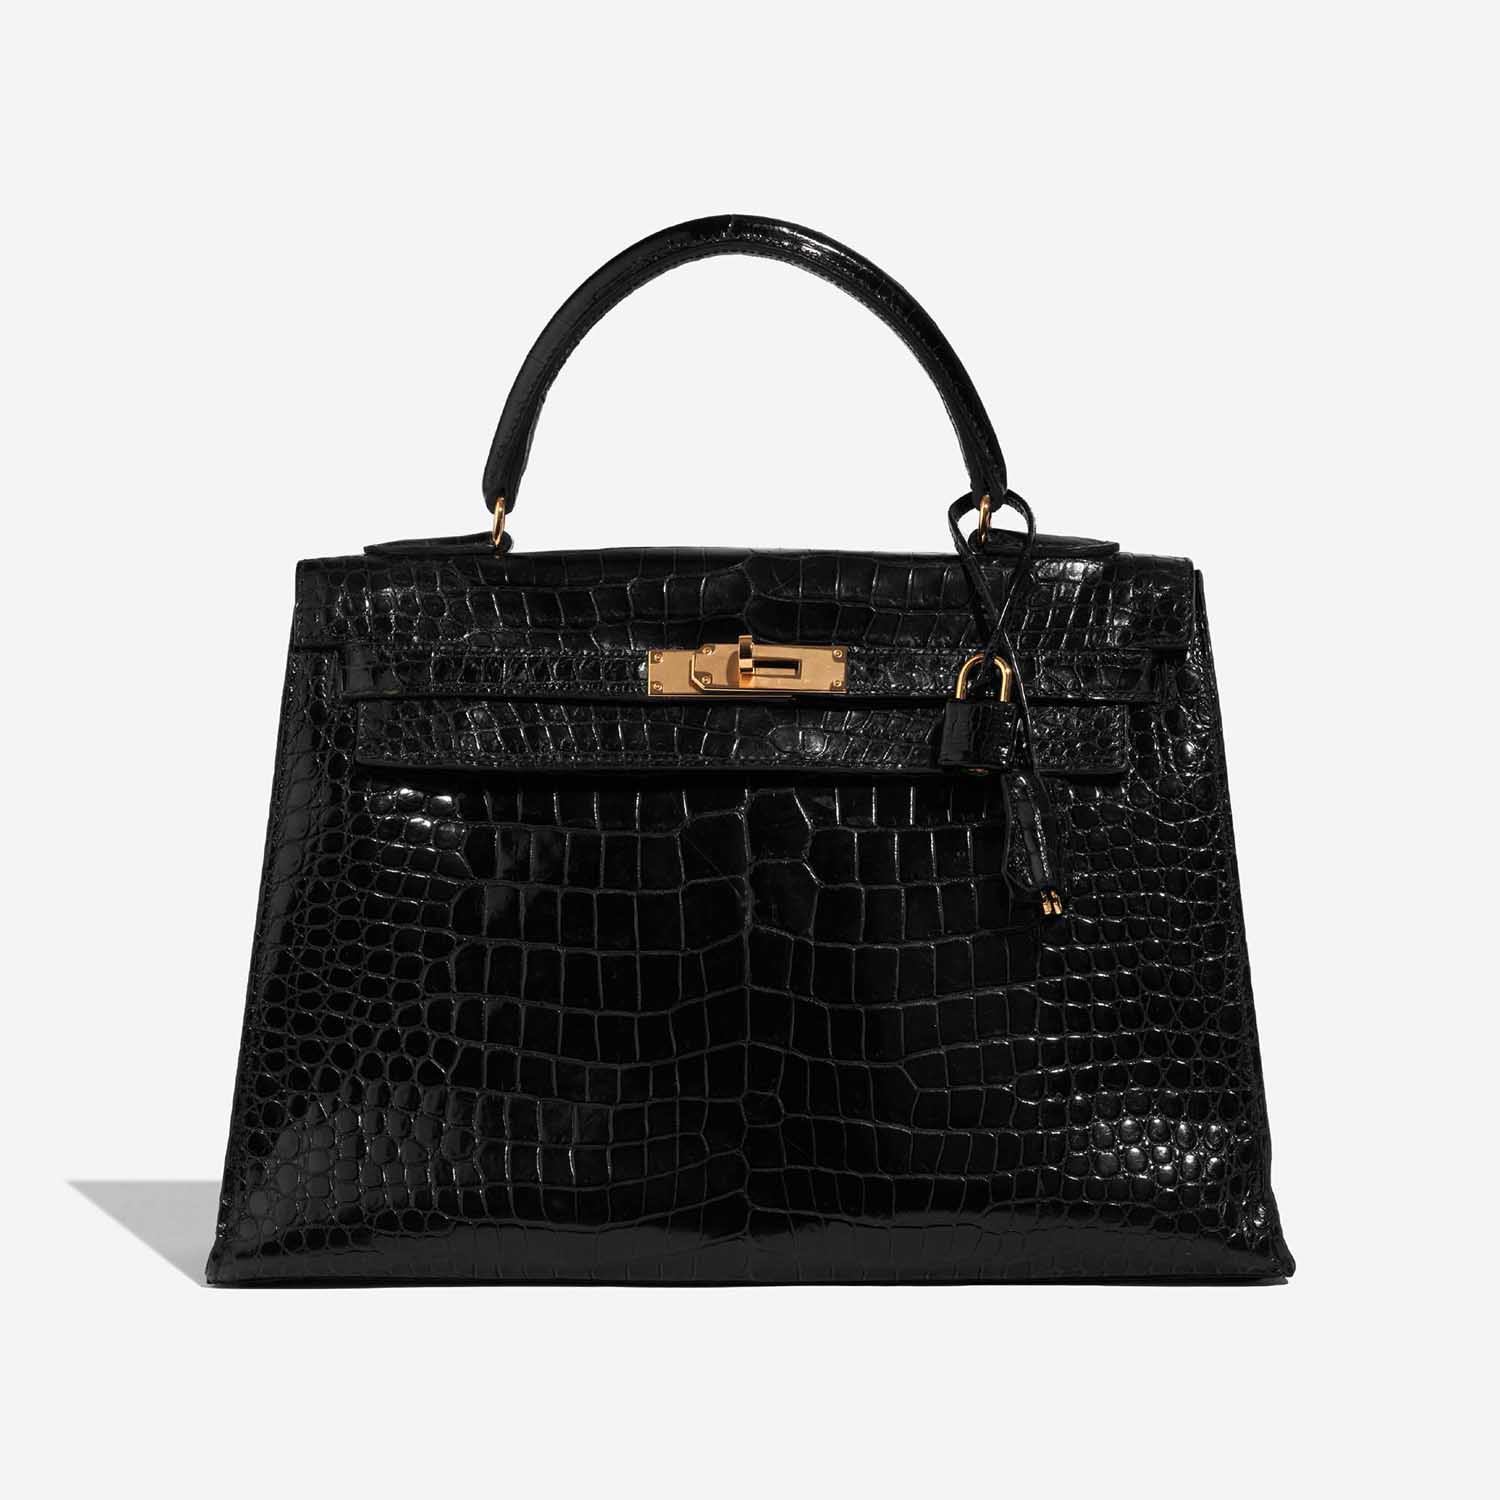 Hermès Kelly 32 Schwarz 2F S | Verkaufen Sie Ihre Designer-Tasche auf Saclab.com